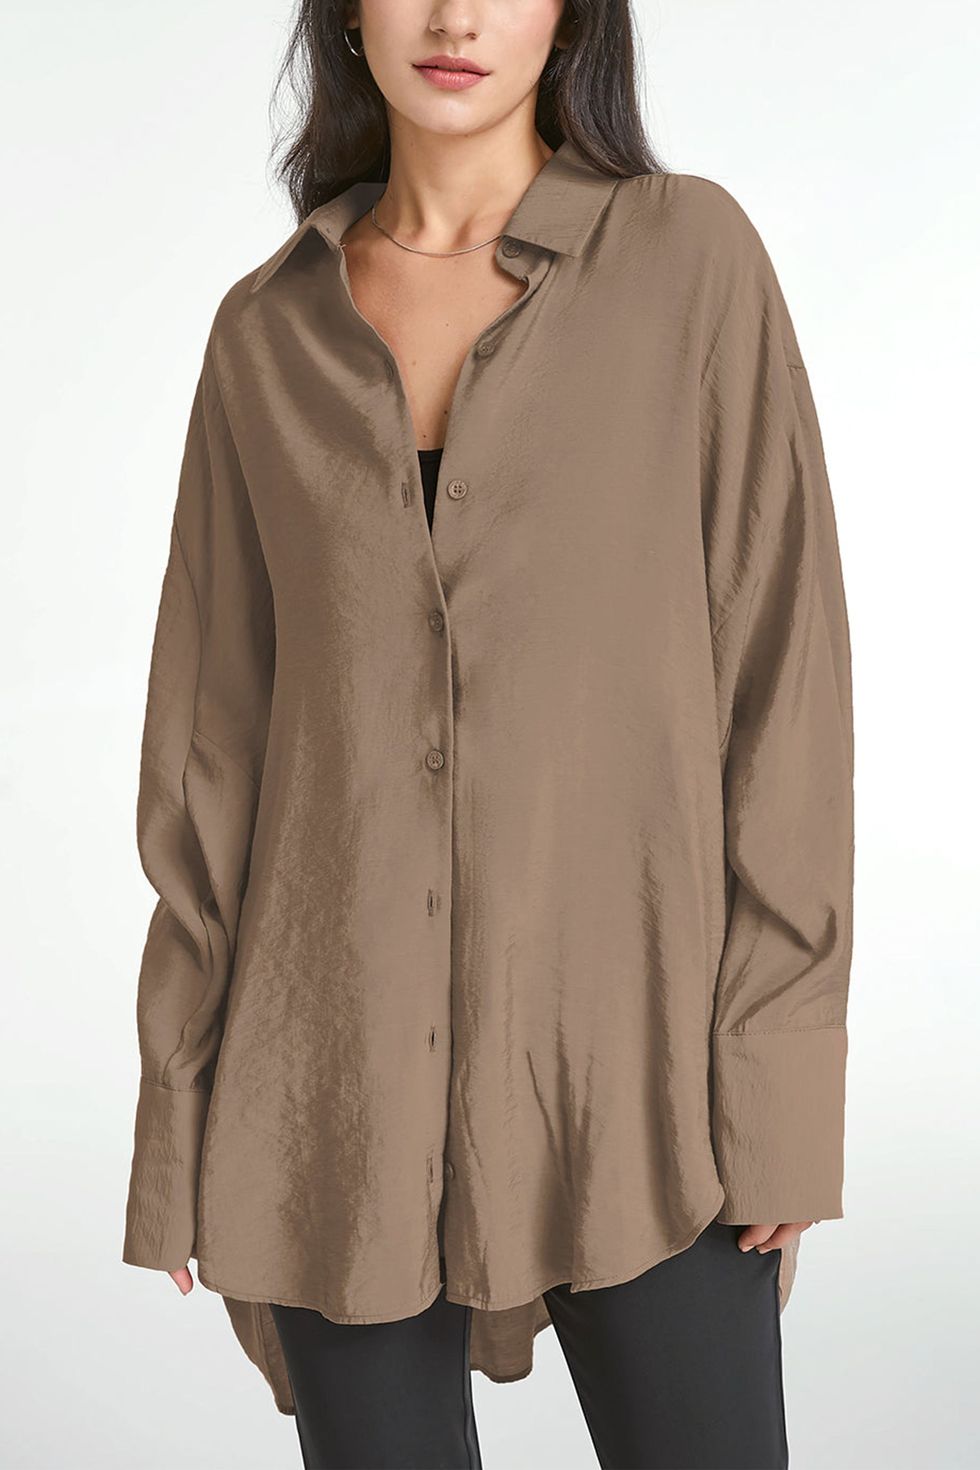 Women's Beach Dress Loose Tops Cover Up Long Sleeve Button Down Sleep Shirt